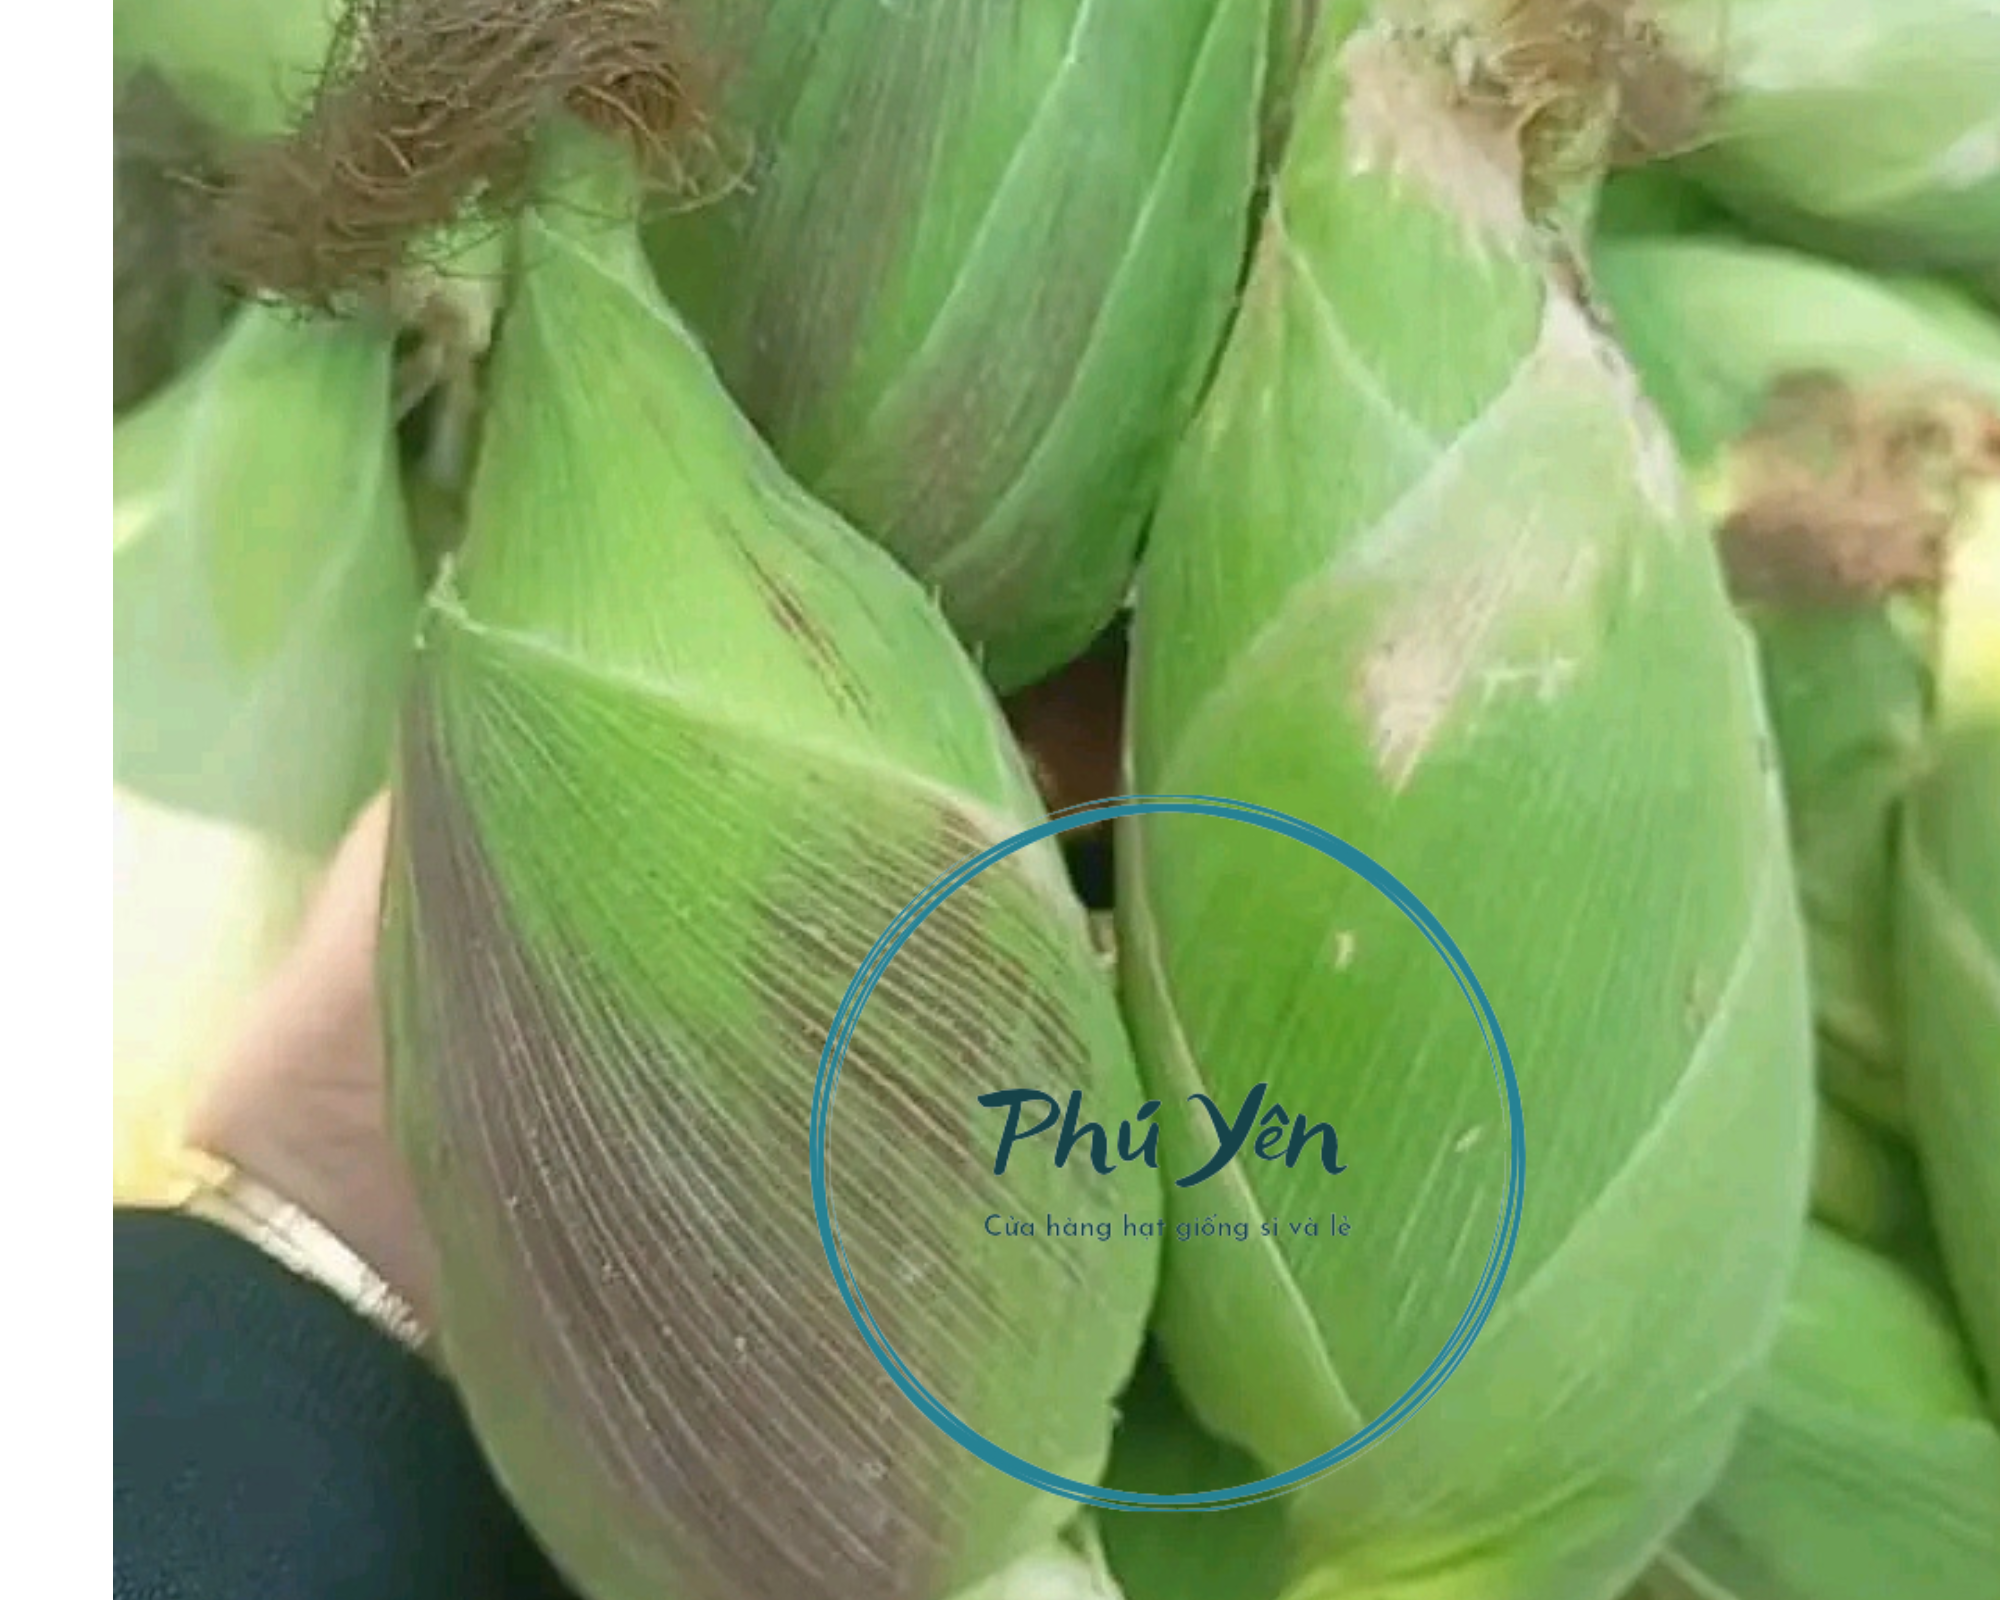 Hạt giống bắp nù sữa gói 1 kg ( tặng kèm 1 gói hạt giống rau Thái Lan bất kỳ )